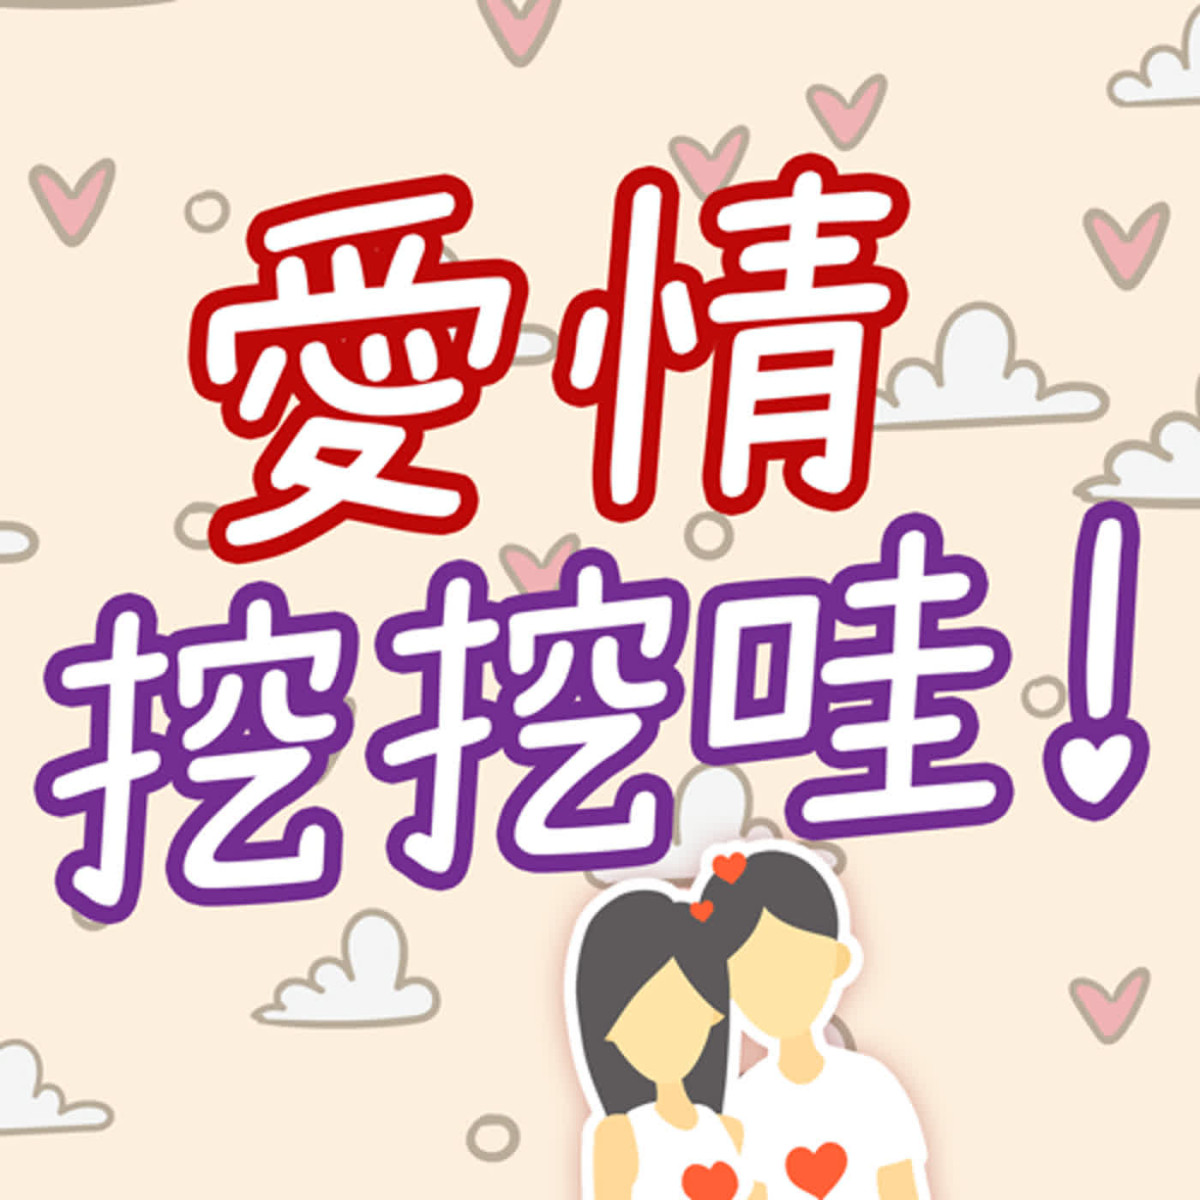 愛情挖挖哇！ - 不靠外貌只靠內在的愛情存在嗎? #盲婚試愛日本篇封面圖